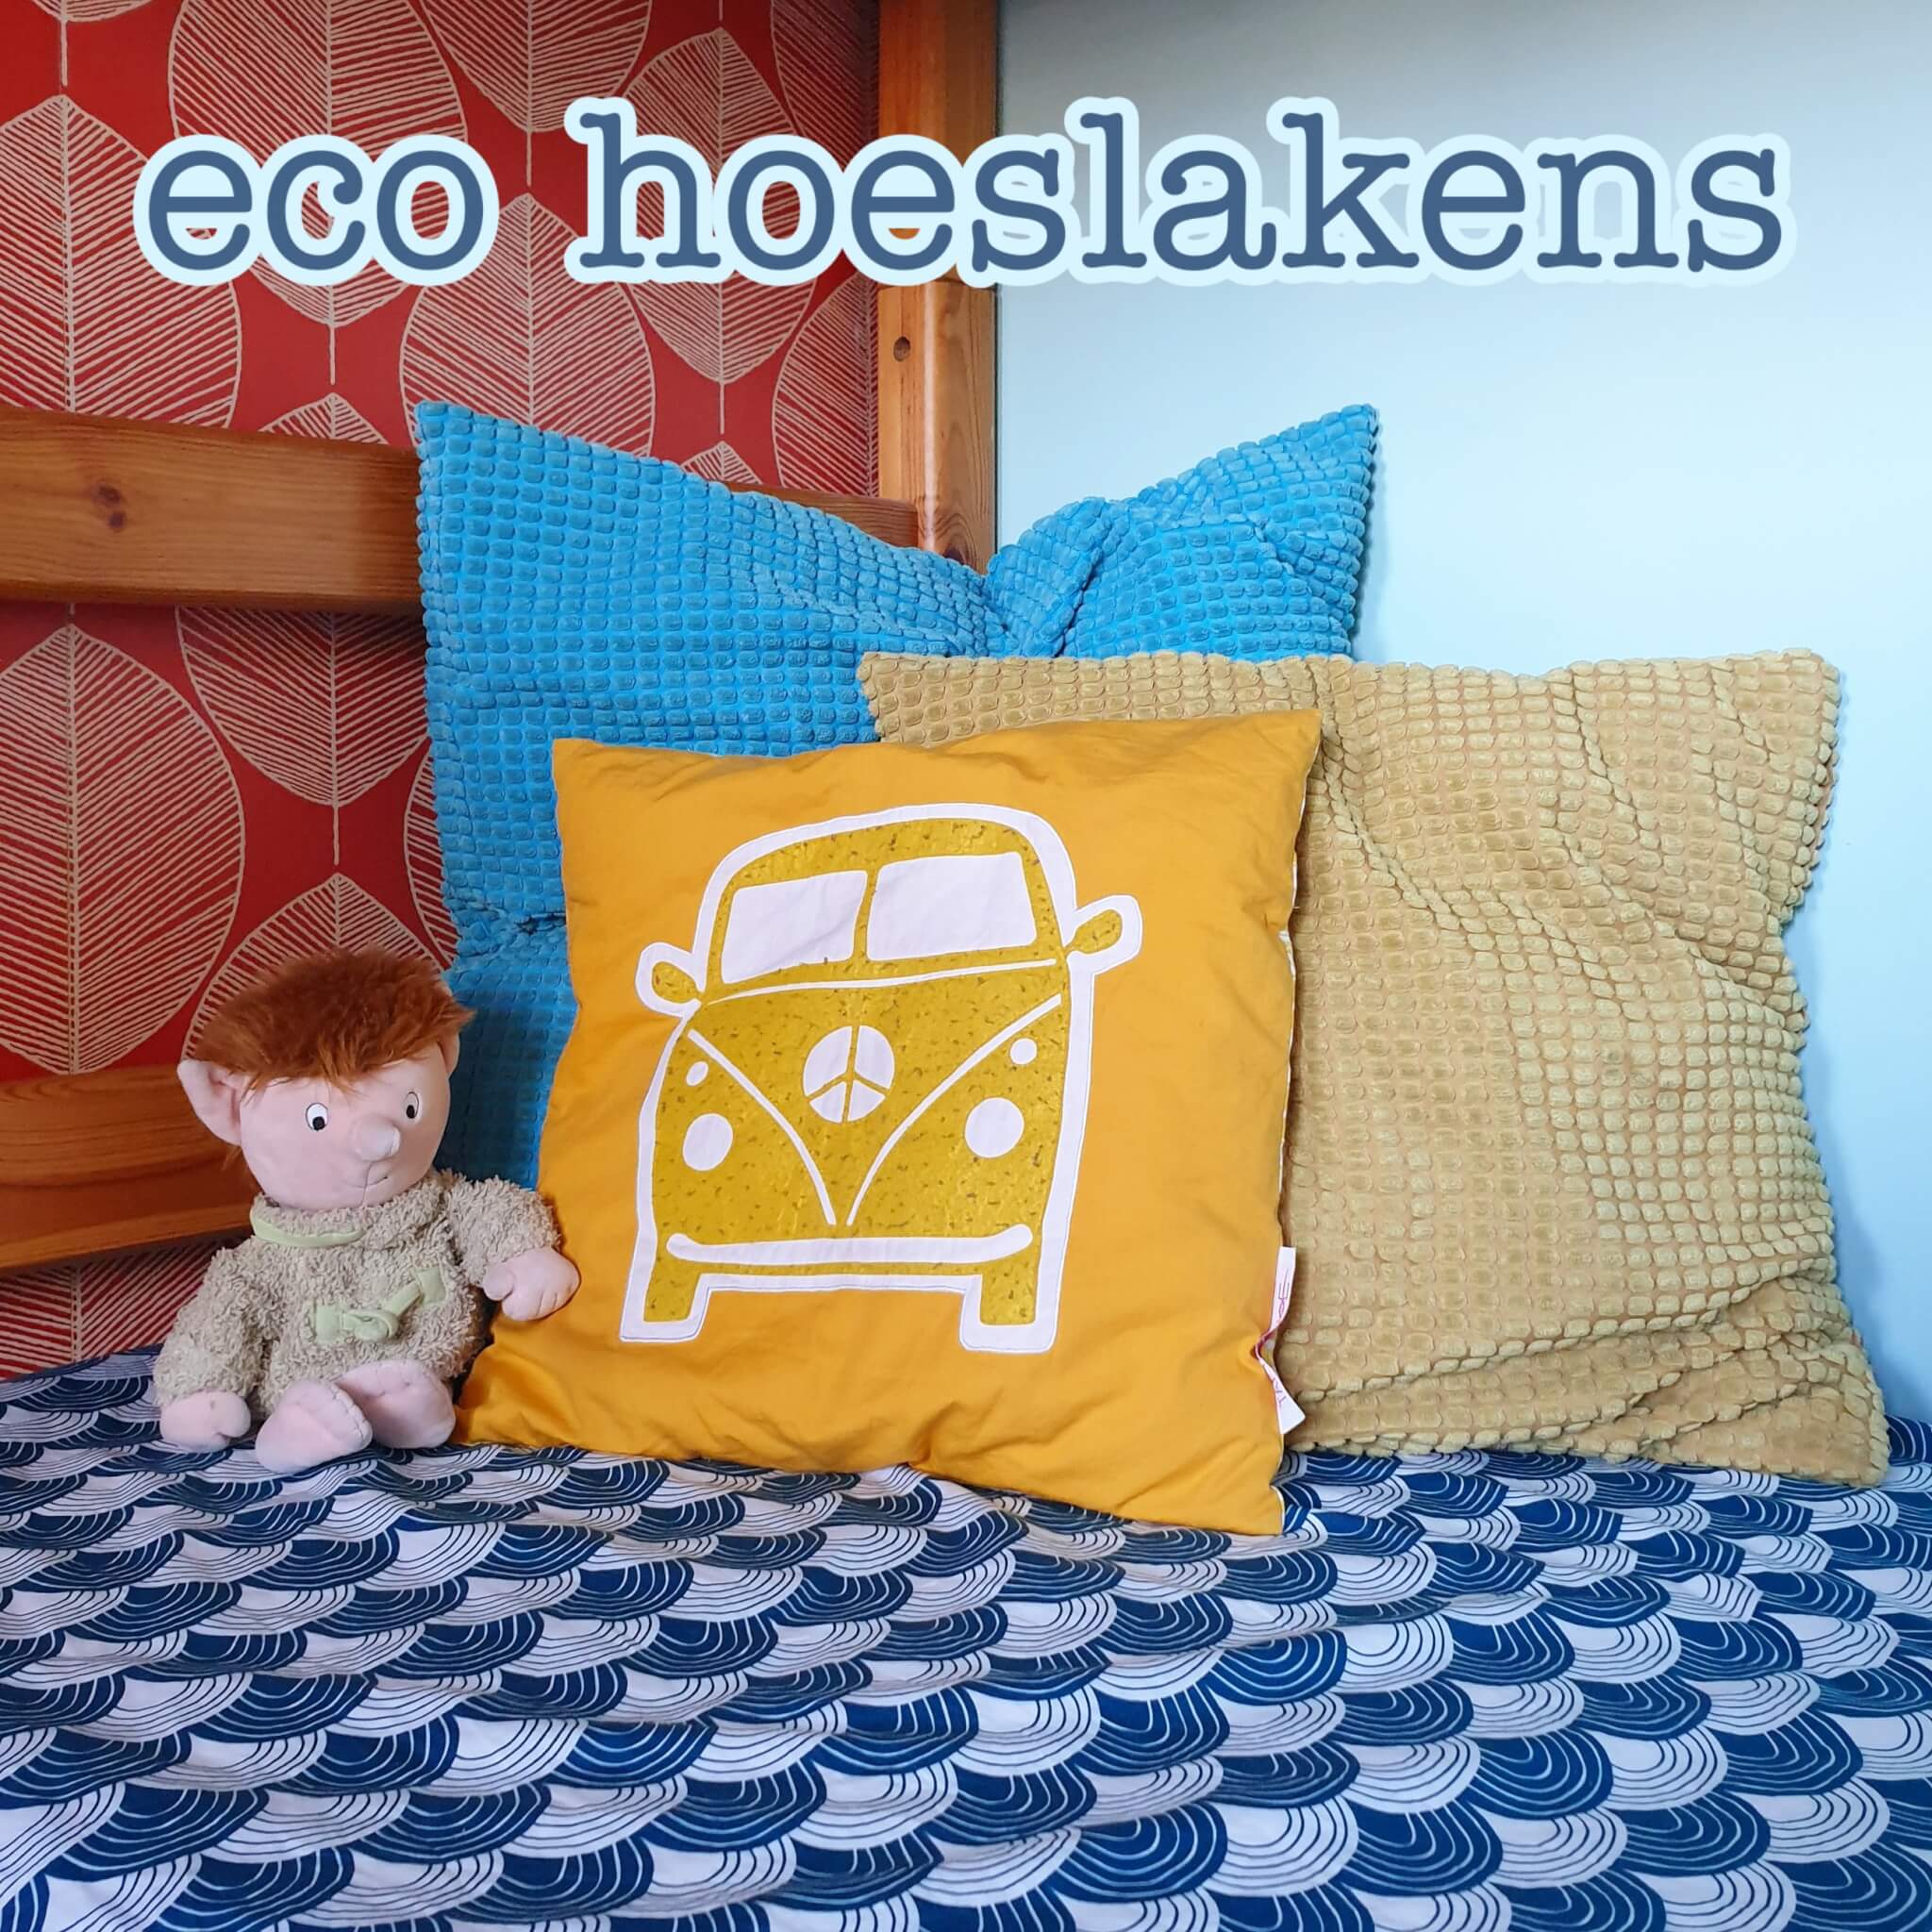 heilig essay bevel Eco hoeslaken van Swedish Linens voor kinderbed Leuk met kids